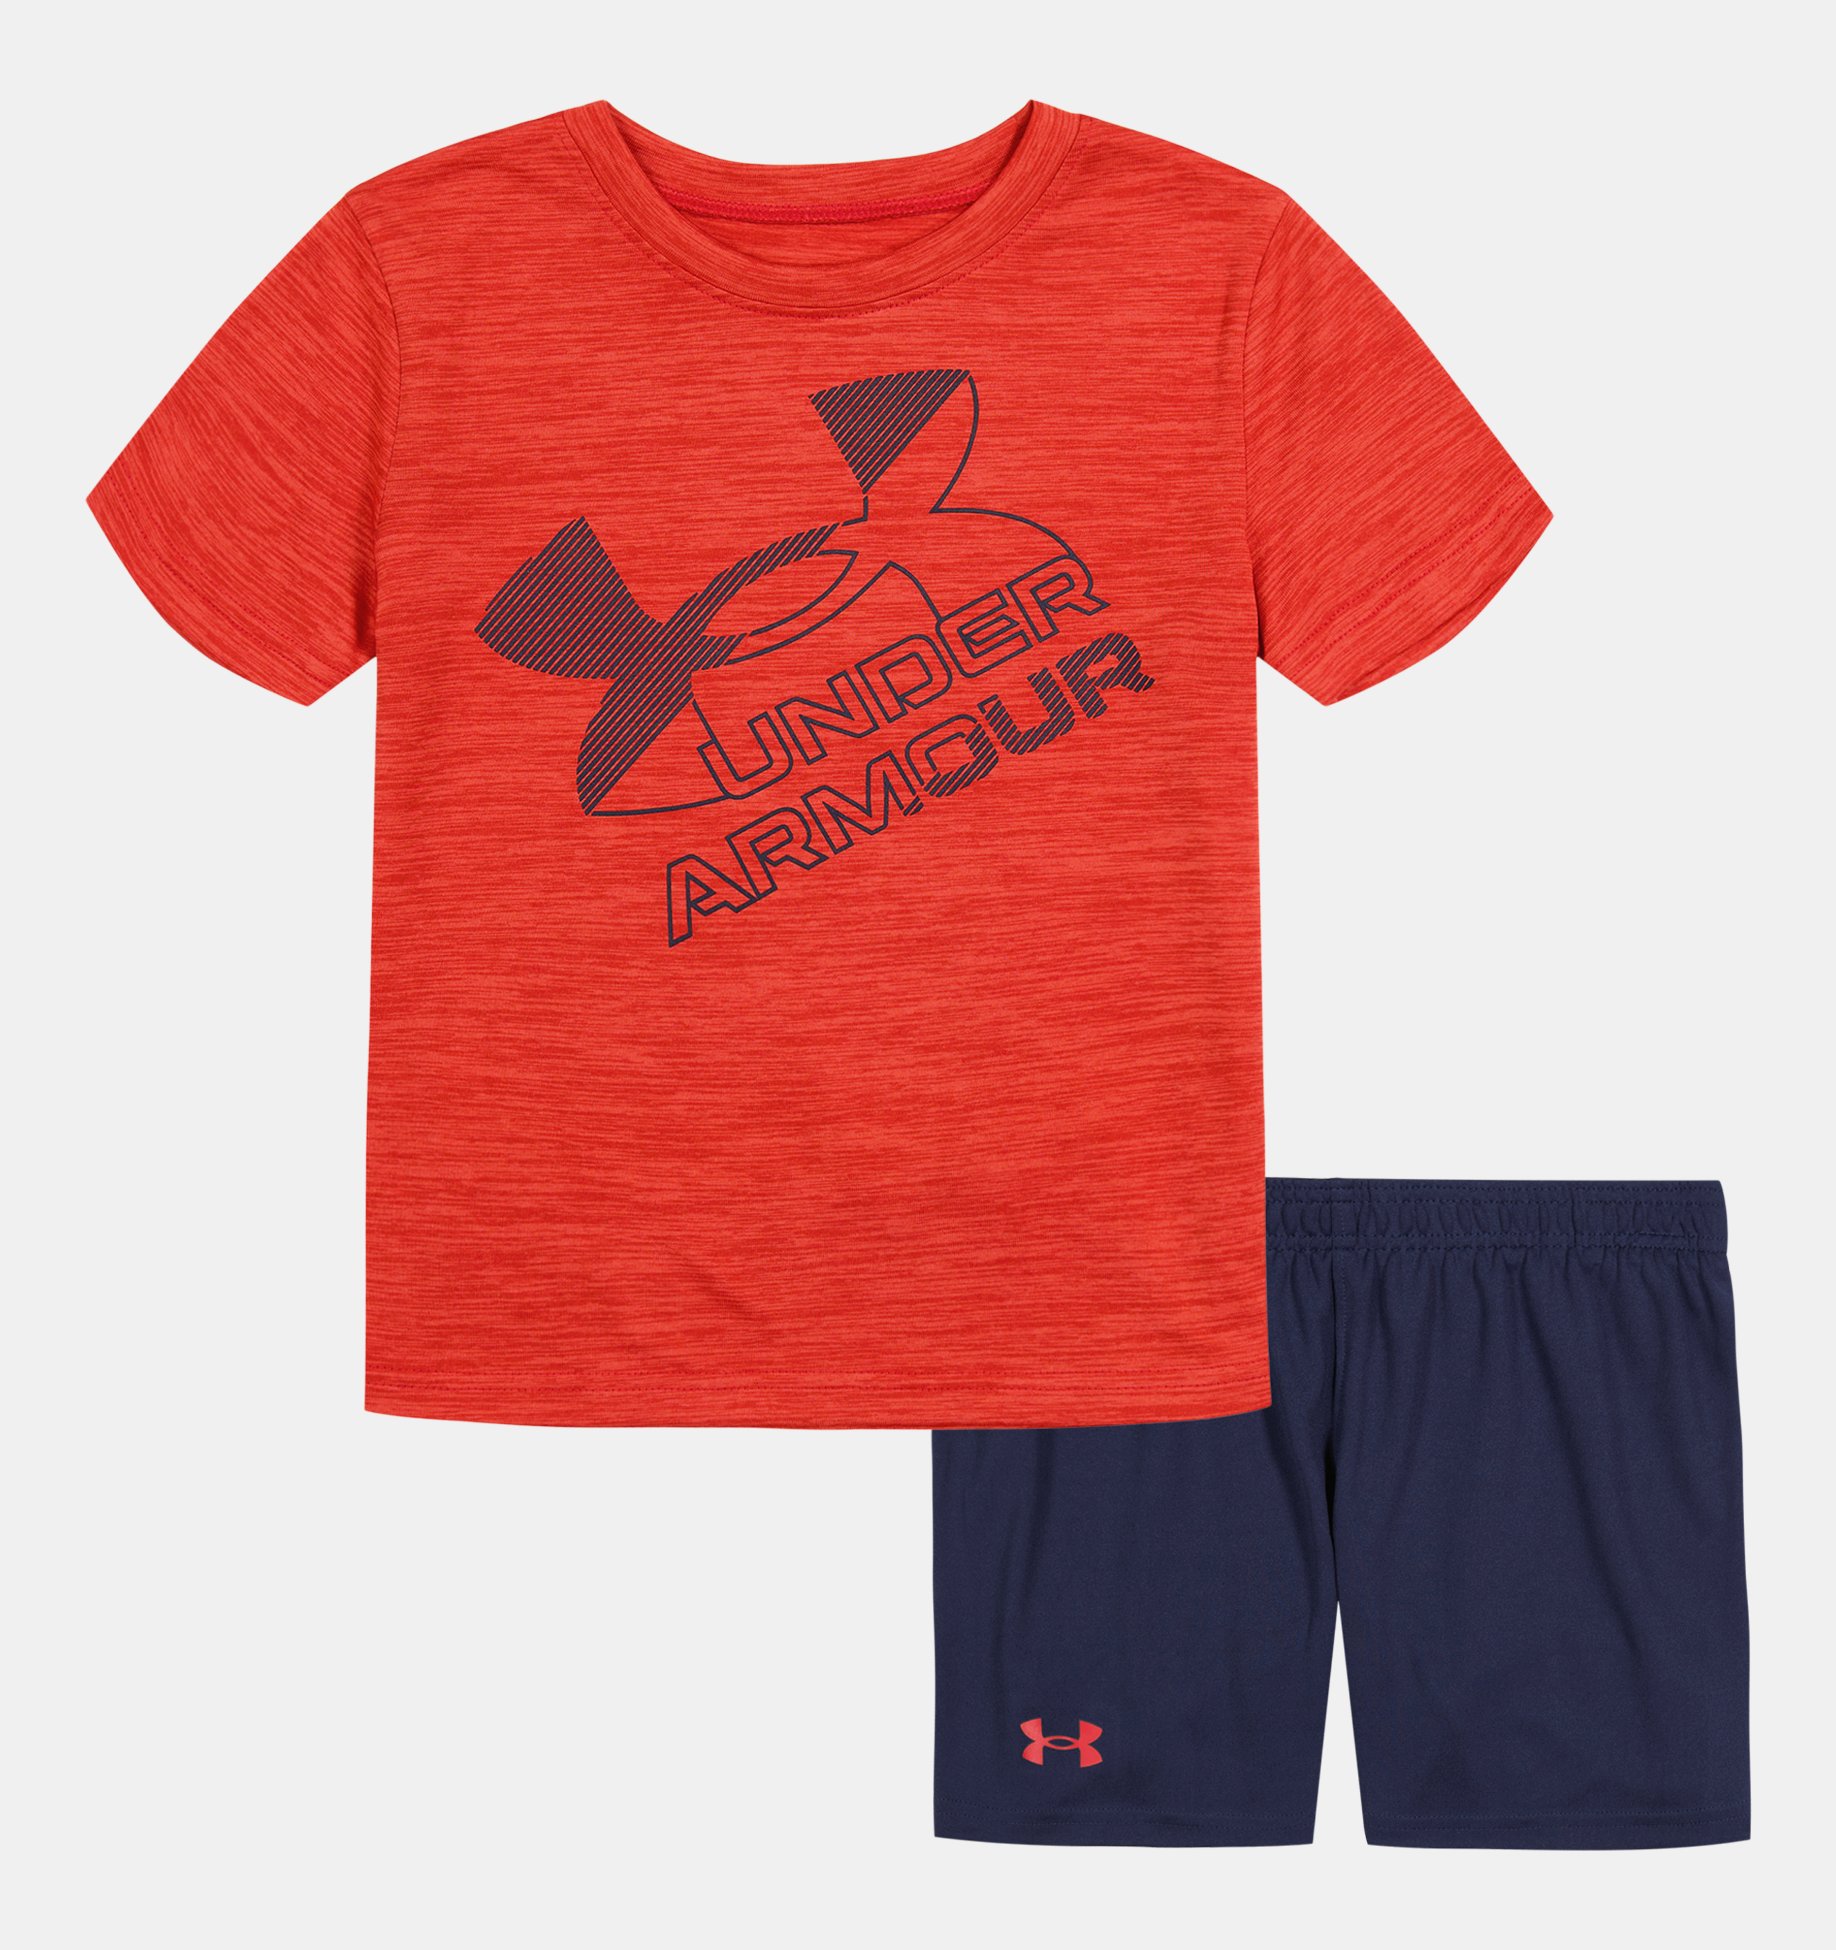 UNDER ARMOUR HeatGear Big UA Logo Athletic Shorts Toddlers Boys 4T 